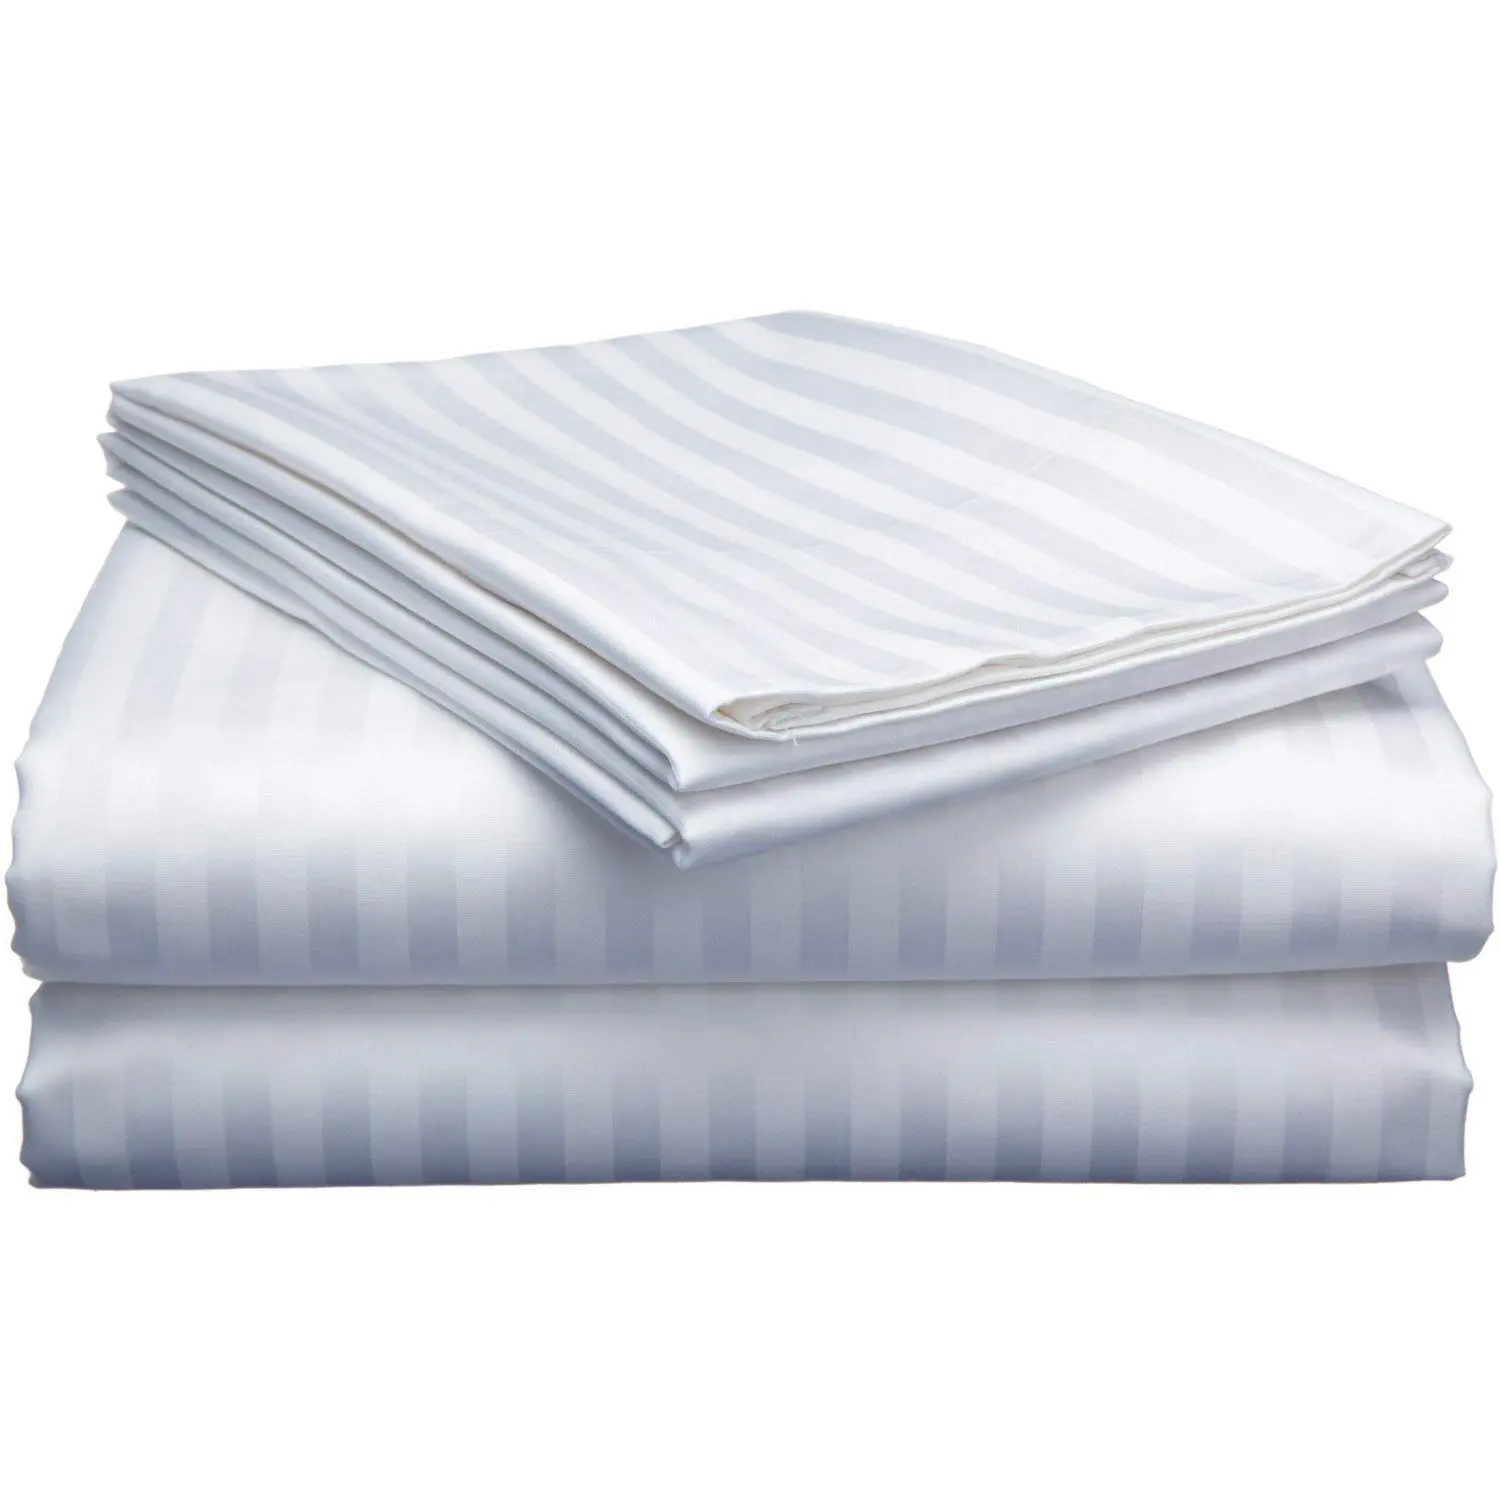 Venta al por mayor de lujo de 5 estrellas Hotel 100% algodón liso blanco ropa de cama sábanas Hotel juego de cama sábana plana